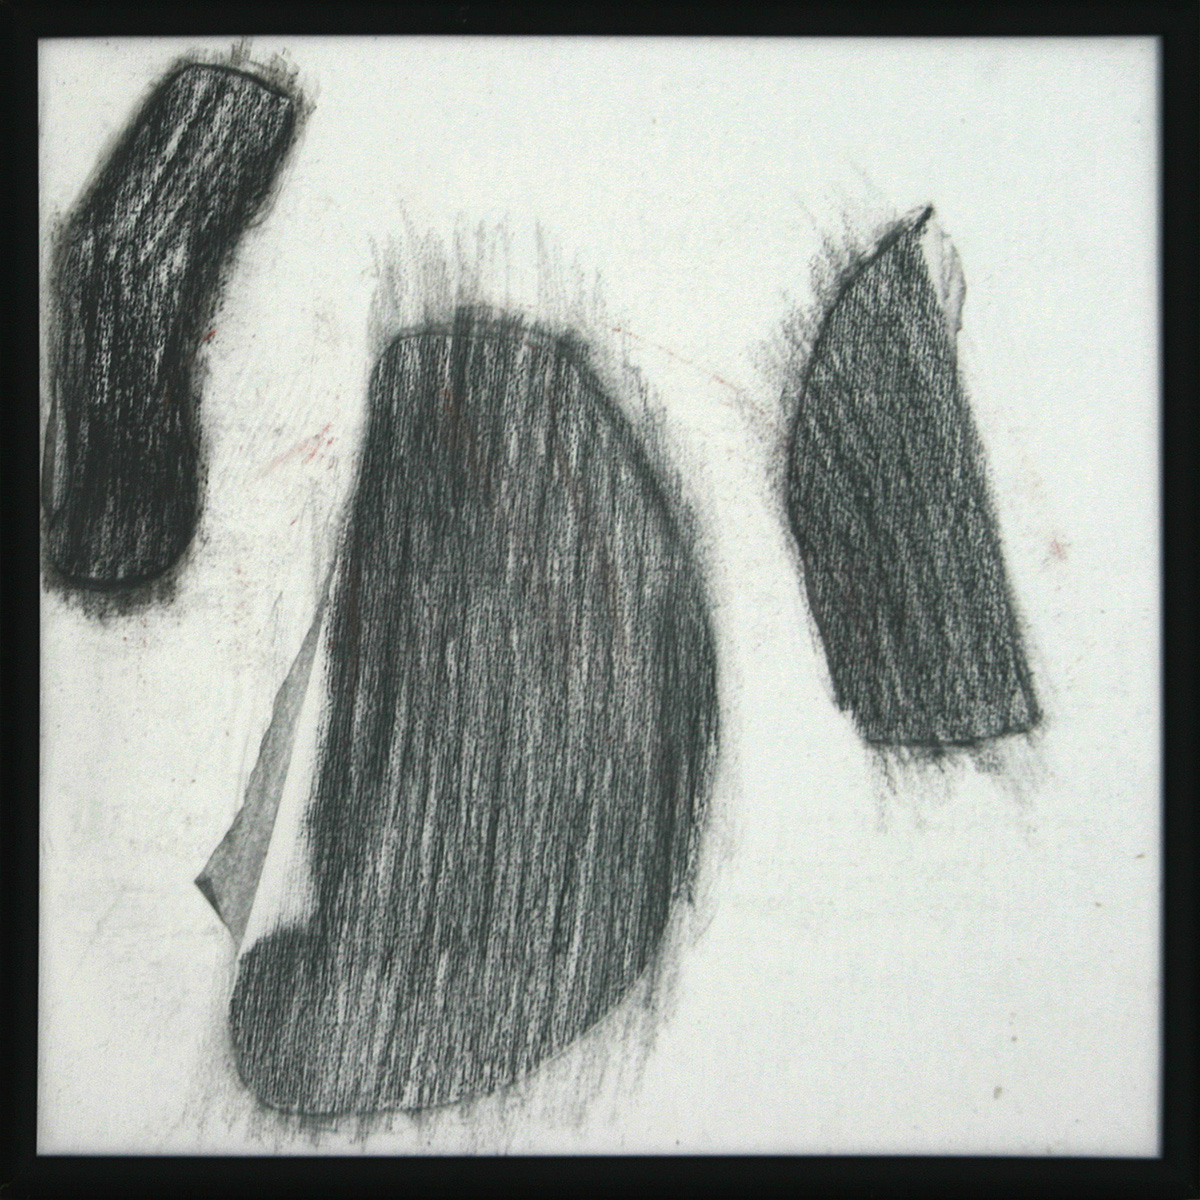 Frottements noirs / Gromperen 3, 201730 x 30 cmLeinwand auf Karton, einfoliert, Kohle; Alu-Wechselrahmen